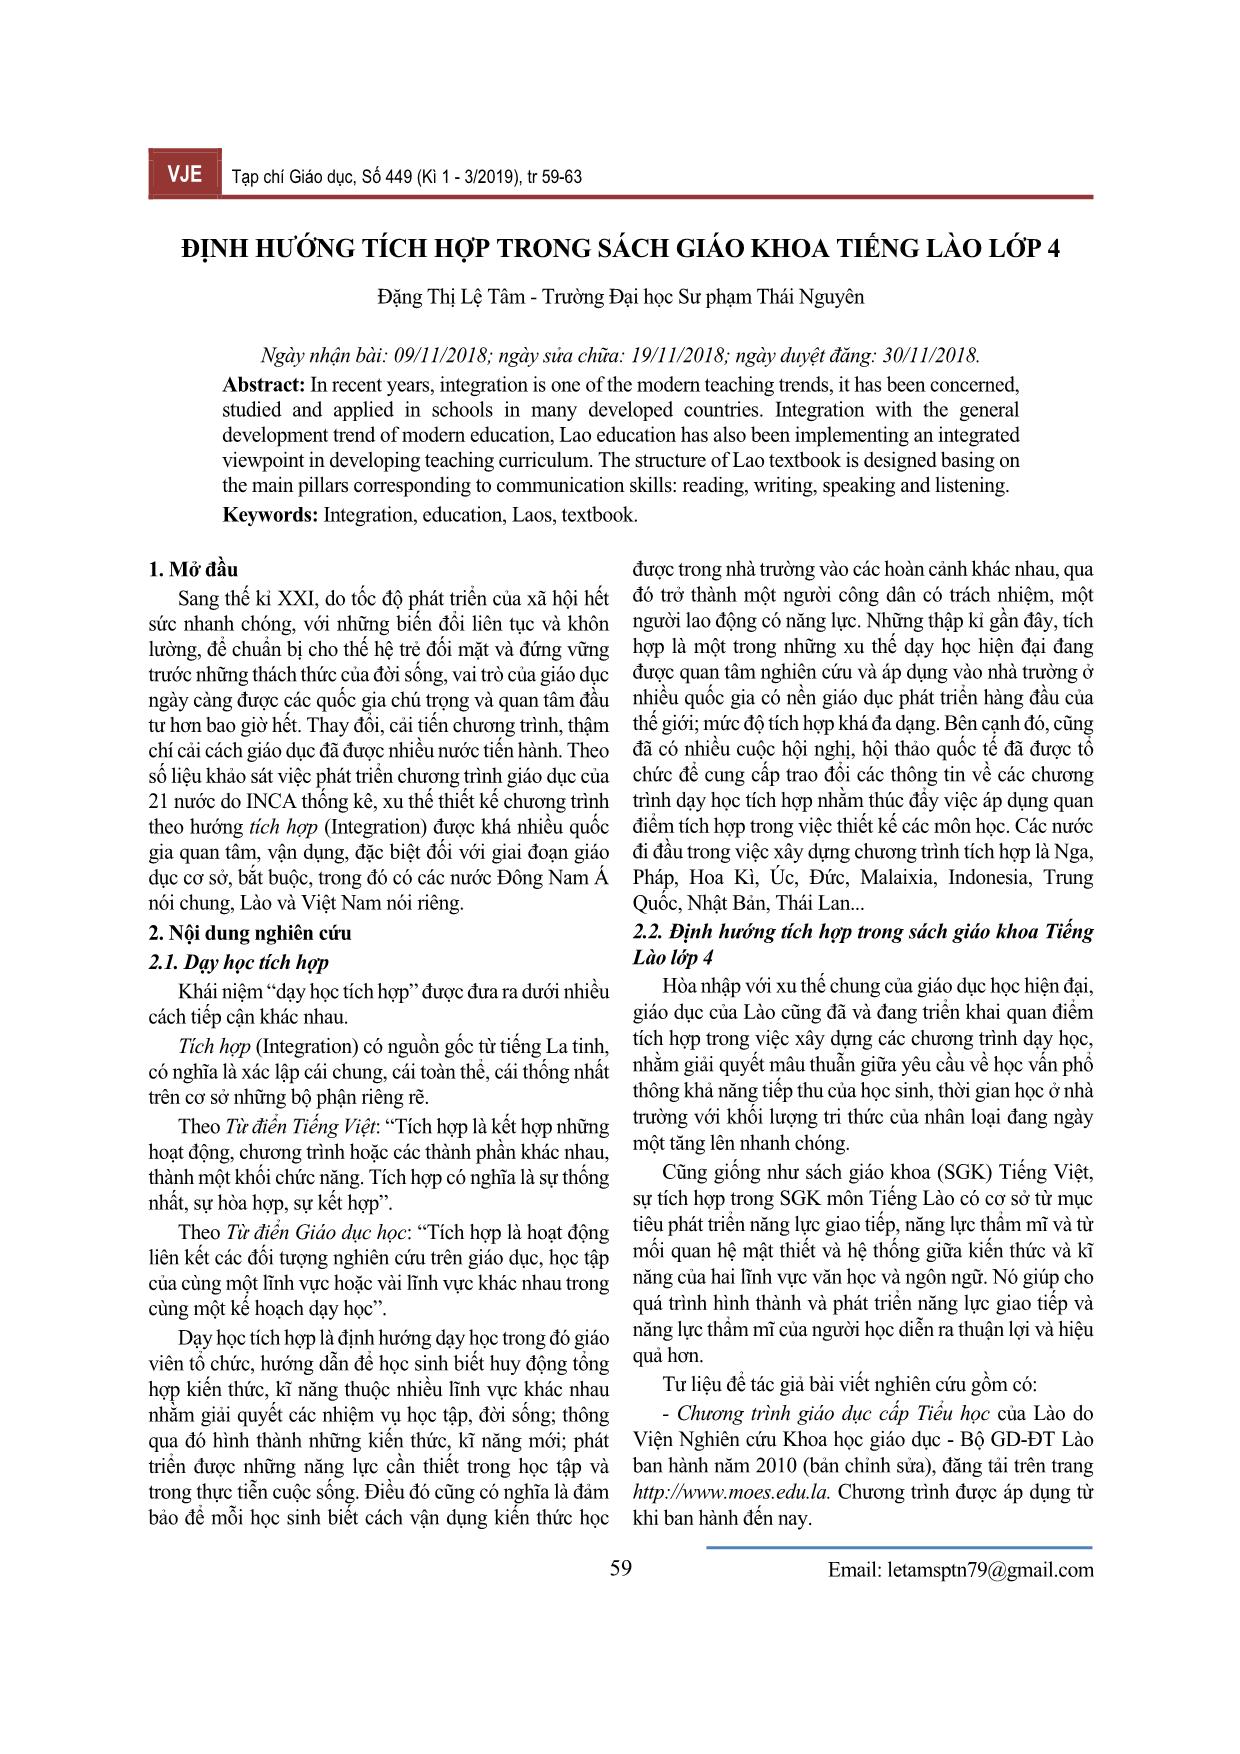 Định hướng tích hợp trong sách giáo khoa tiếng Lào Lớp 4 trang 1